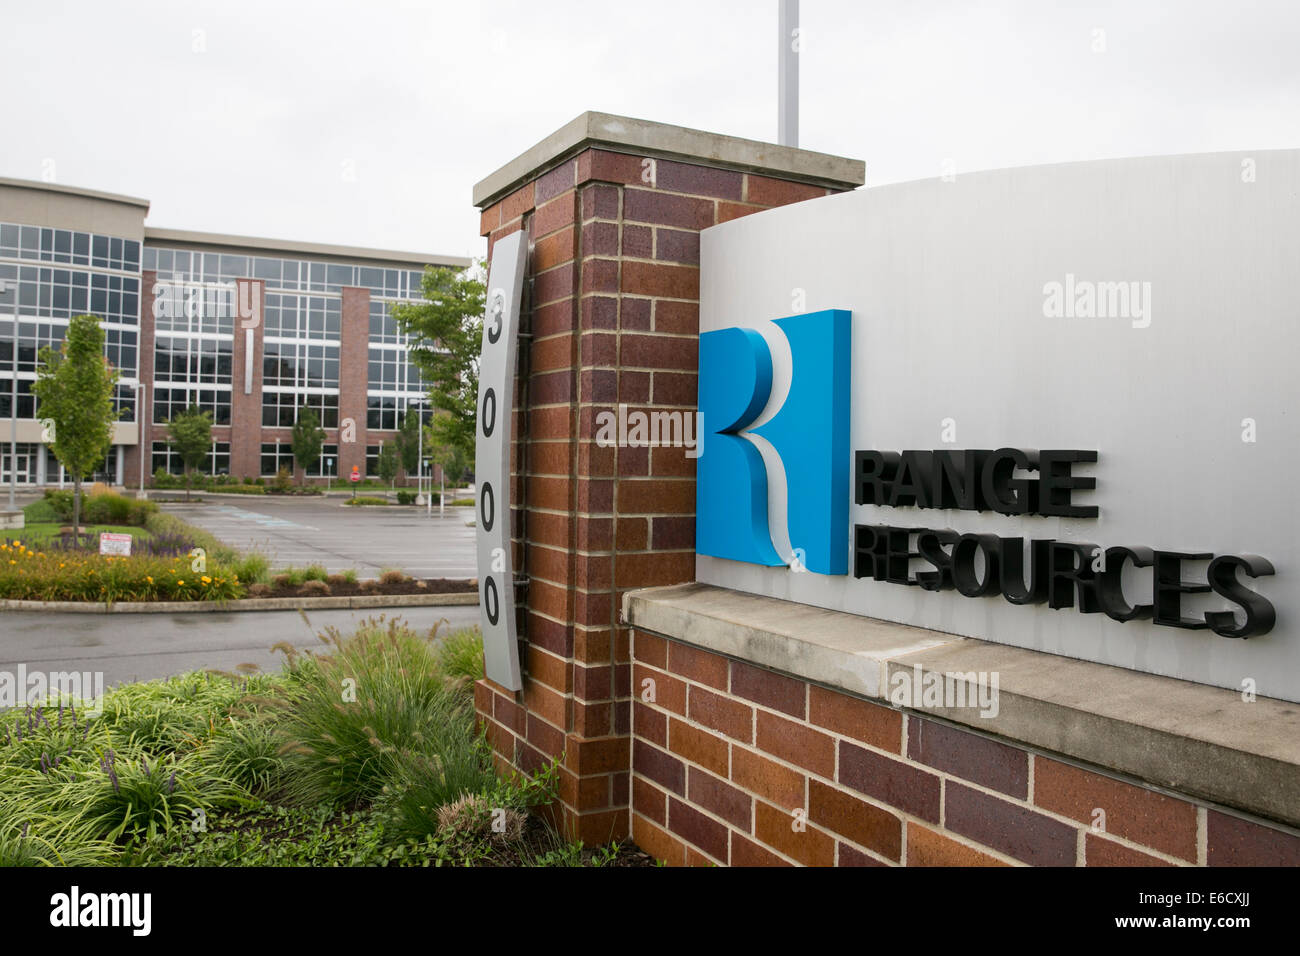 Un immeuble de bureaux occupé par la gamme Resources Corporation à Canonsburg, en Pennsylvanie. Banque D'Images